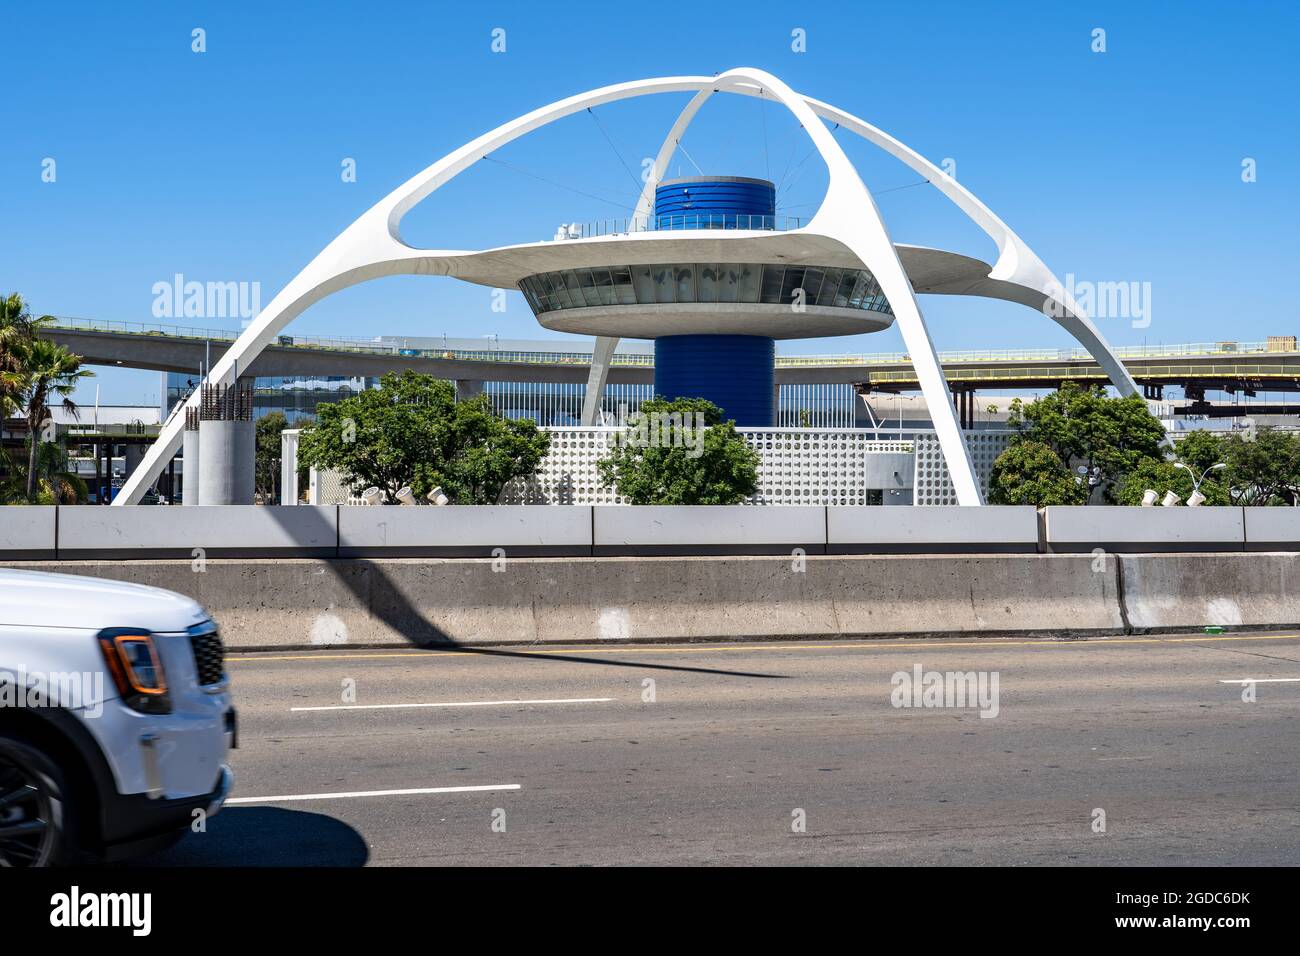 Le bâtiment à thème de l'aéroport de LAX est un design moderne du milieu du siècle anciennement connu sous le nom de restaurant Encounter Banque D'Images